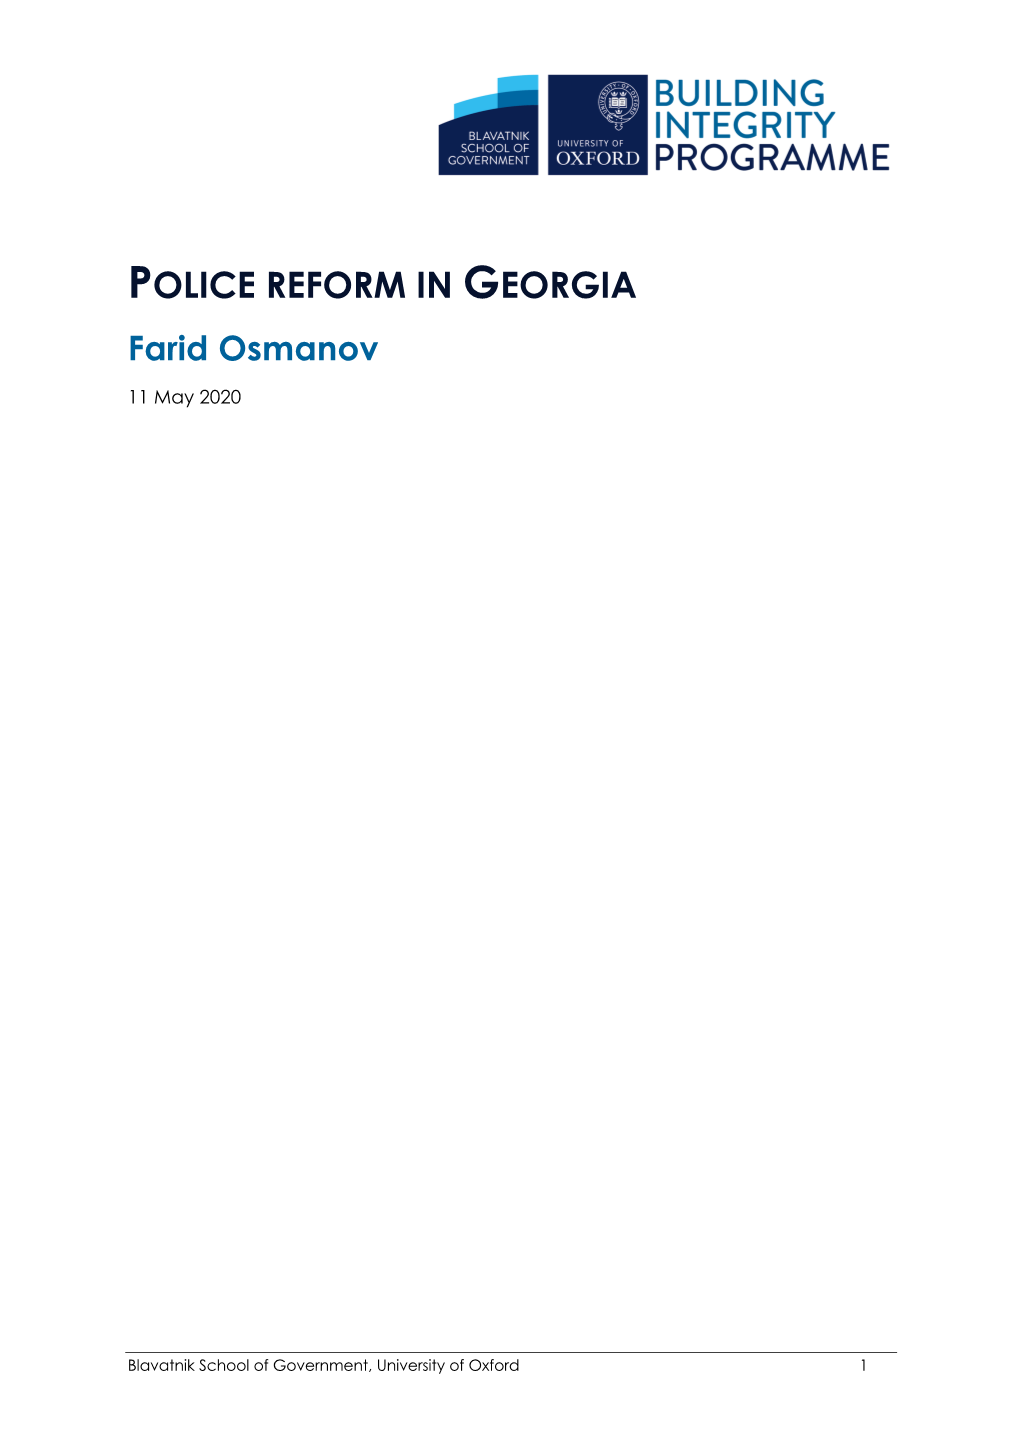 POLICE REFORM in GEORGIA Farid Osmanov